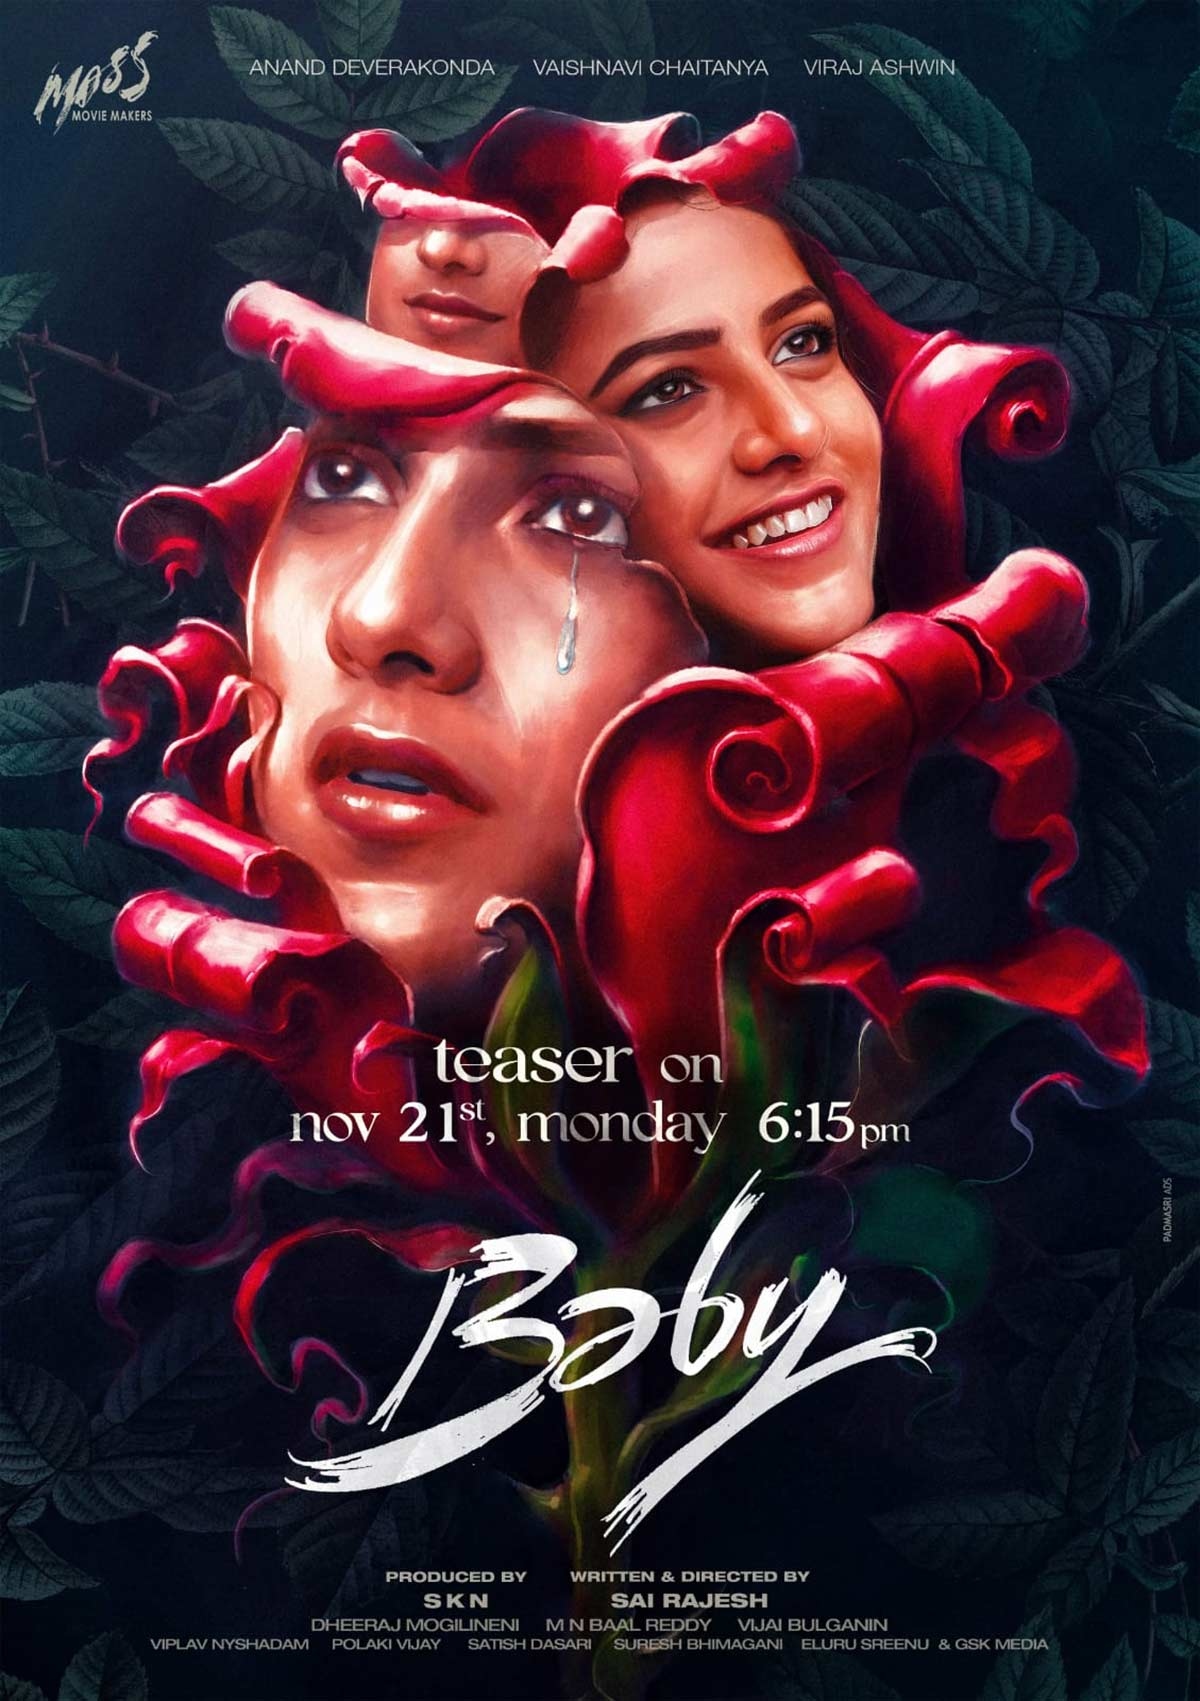 Anand Deverakondas Baby Teaser locks release date